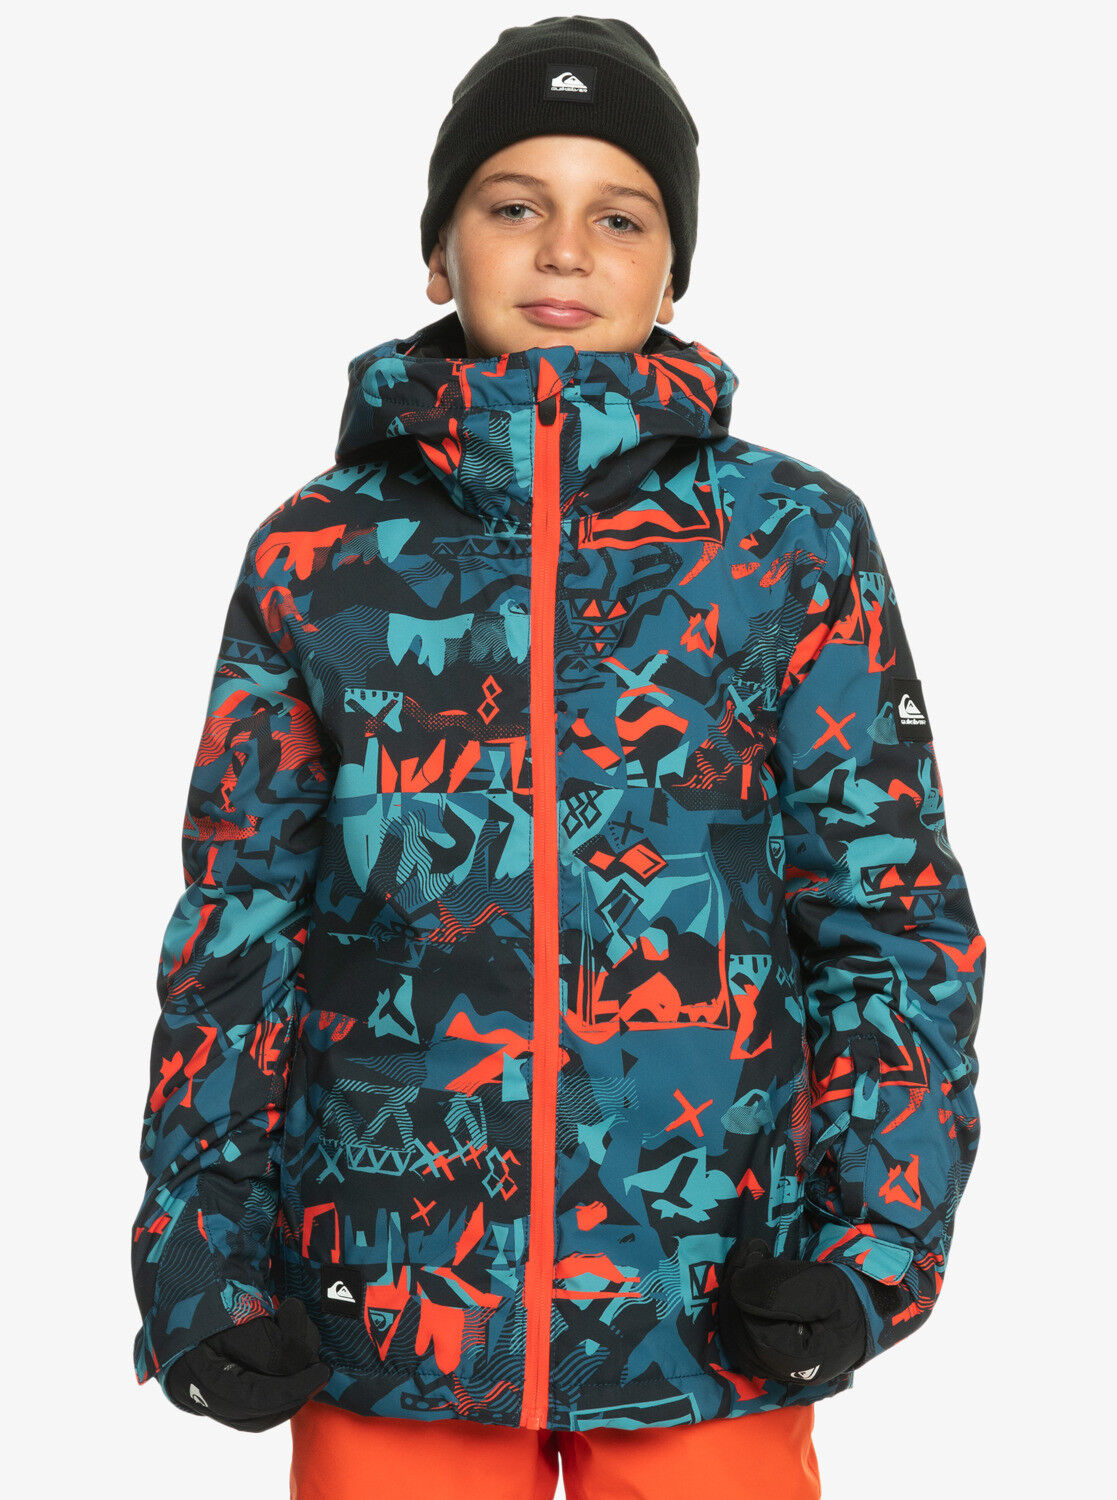 Quiksilver Mission Printed Youth Jacket - Chaqueta de esquí - Niños | Hardloop